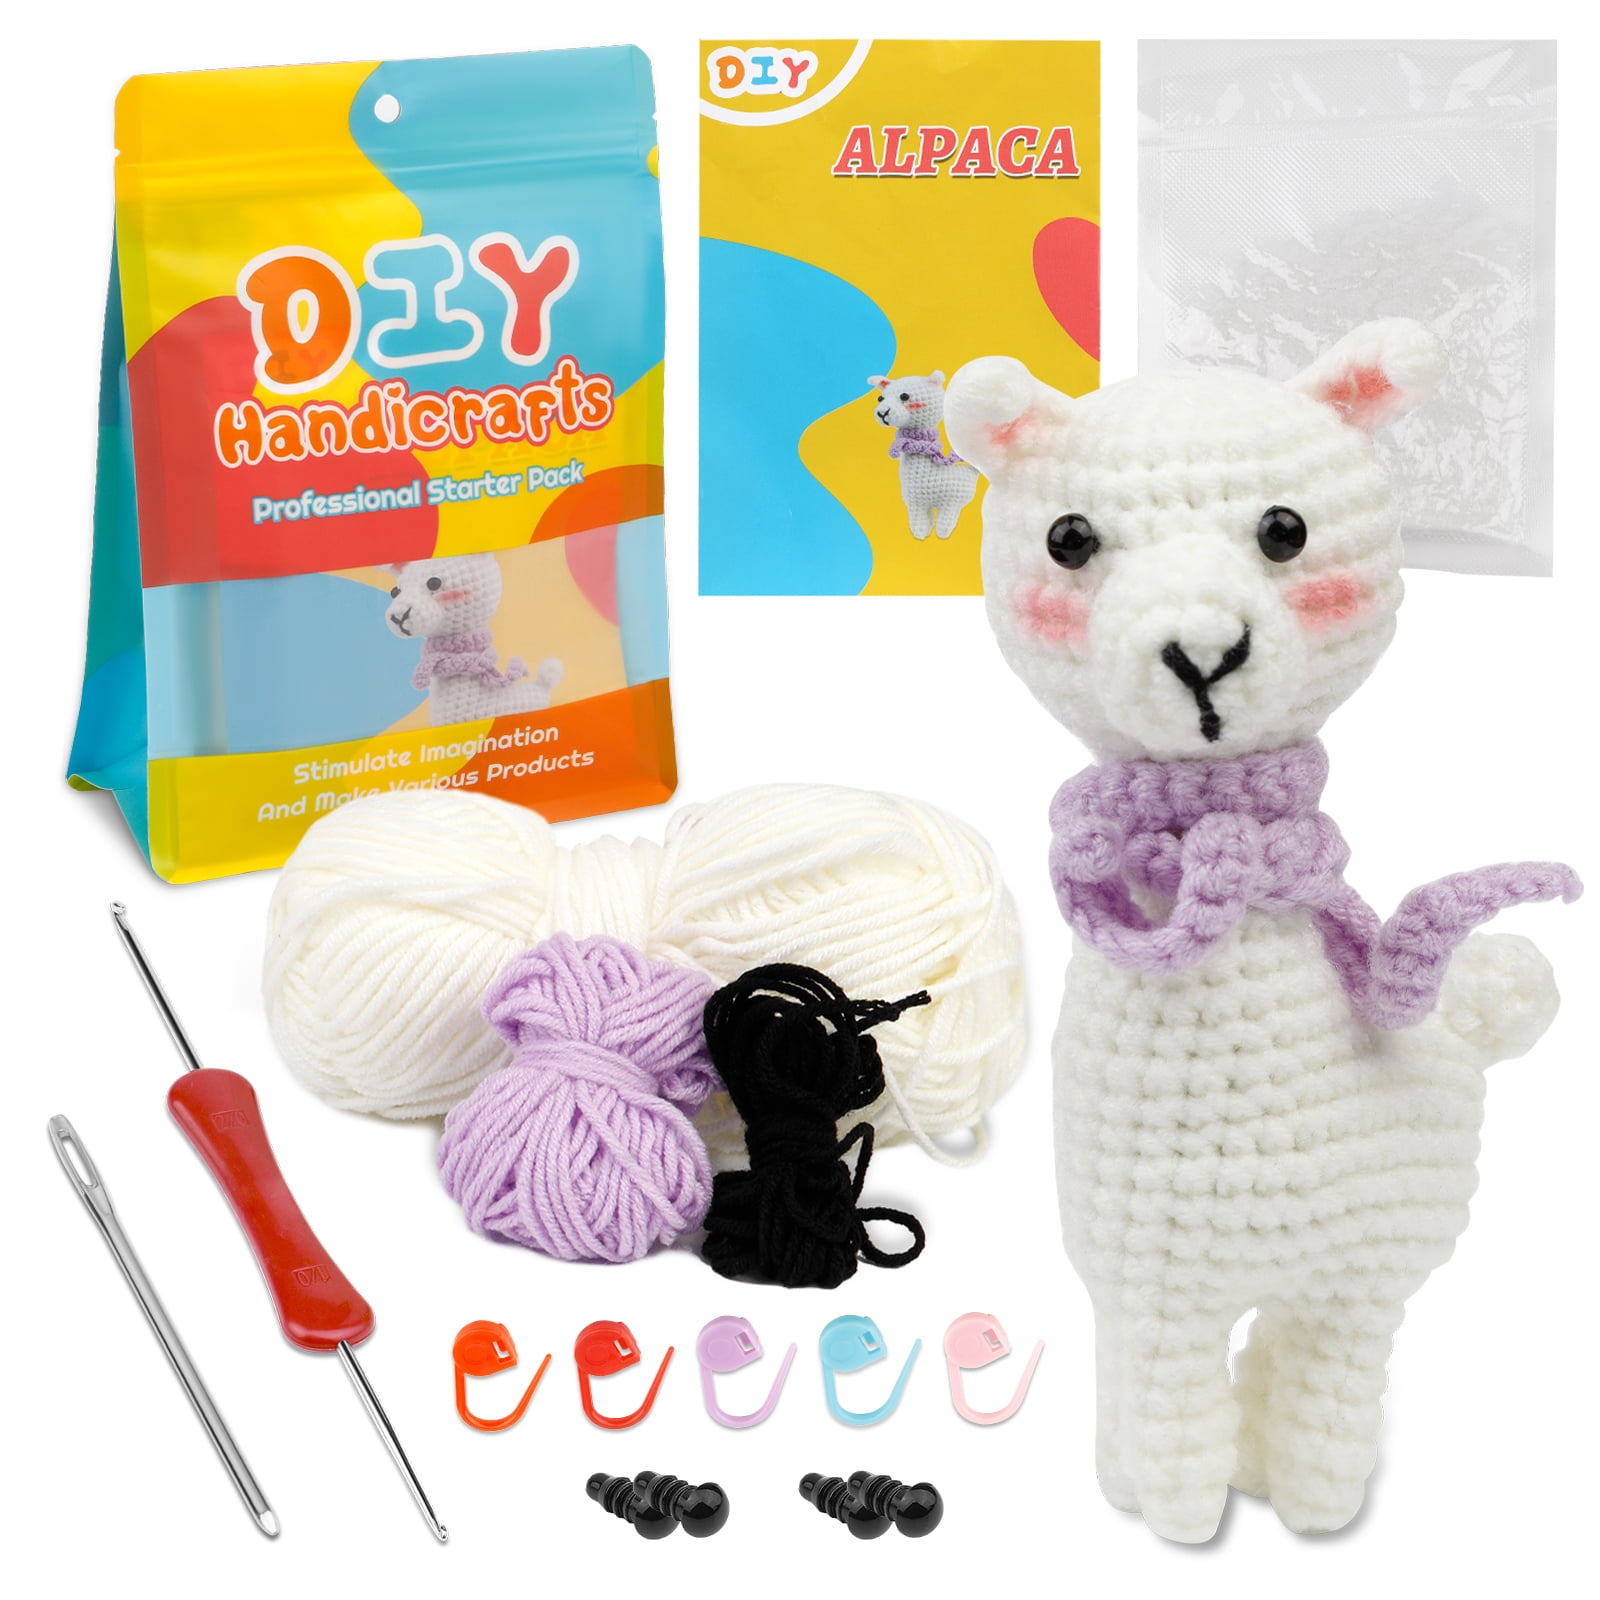 LMDZ Beginners Knitting Kit Crochet Kit for Complete Beginners